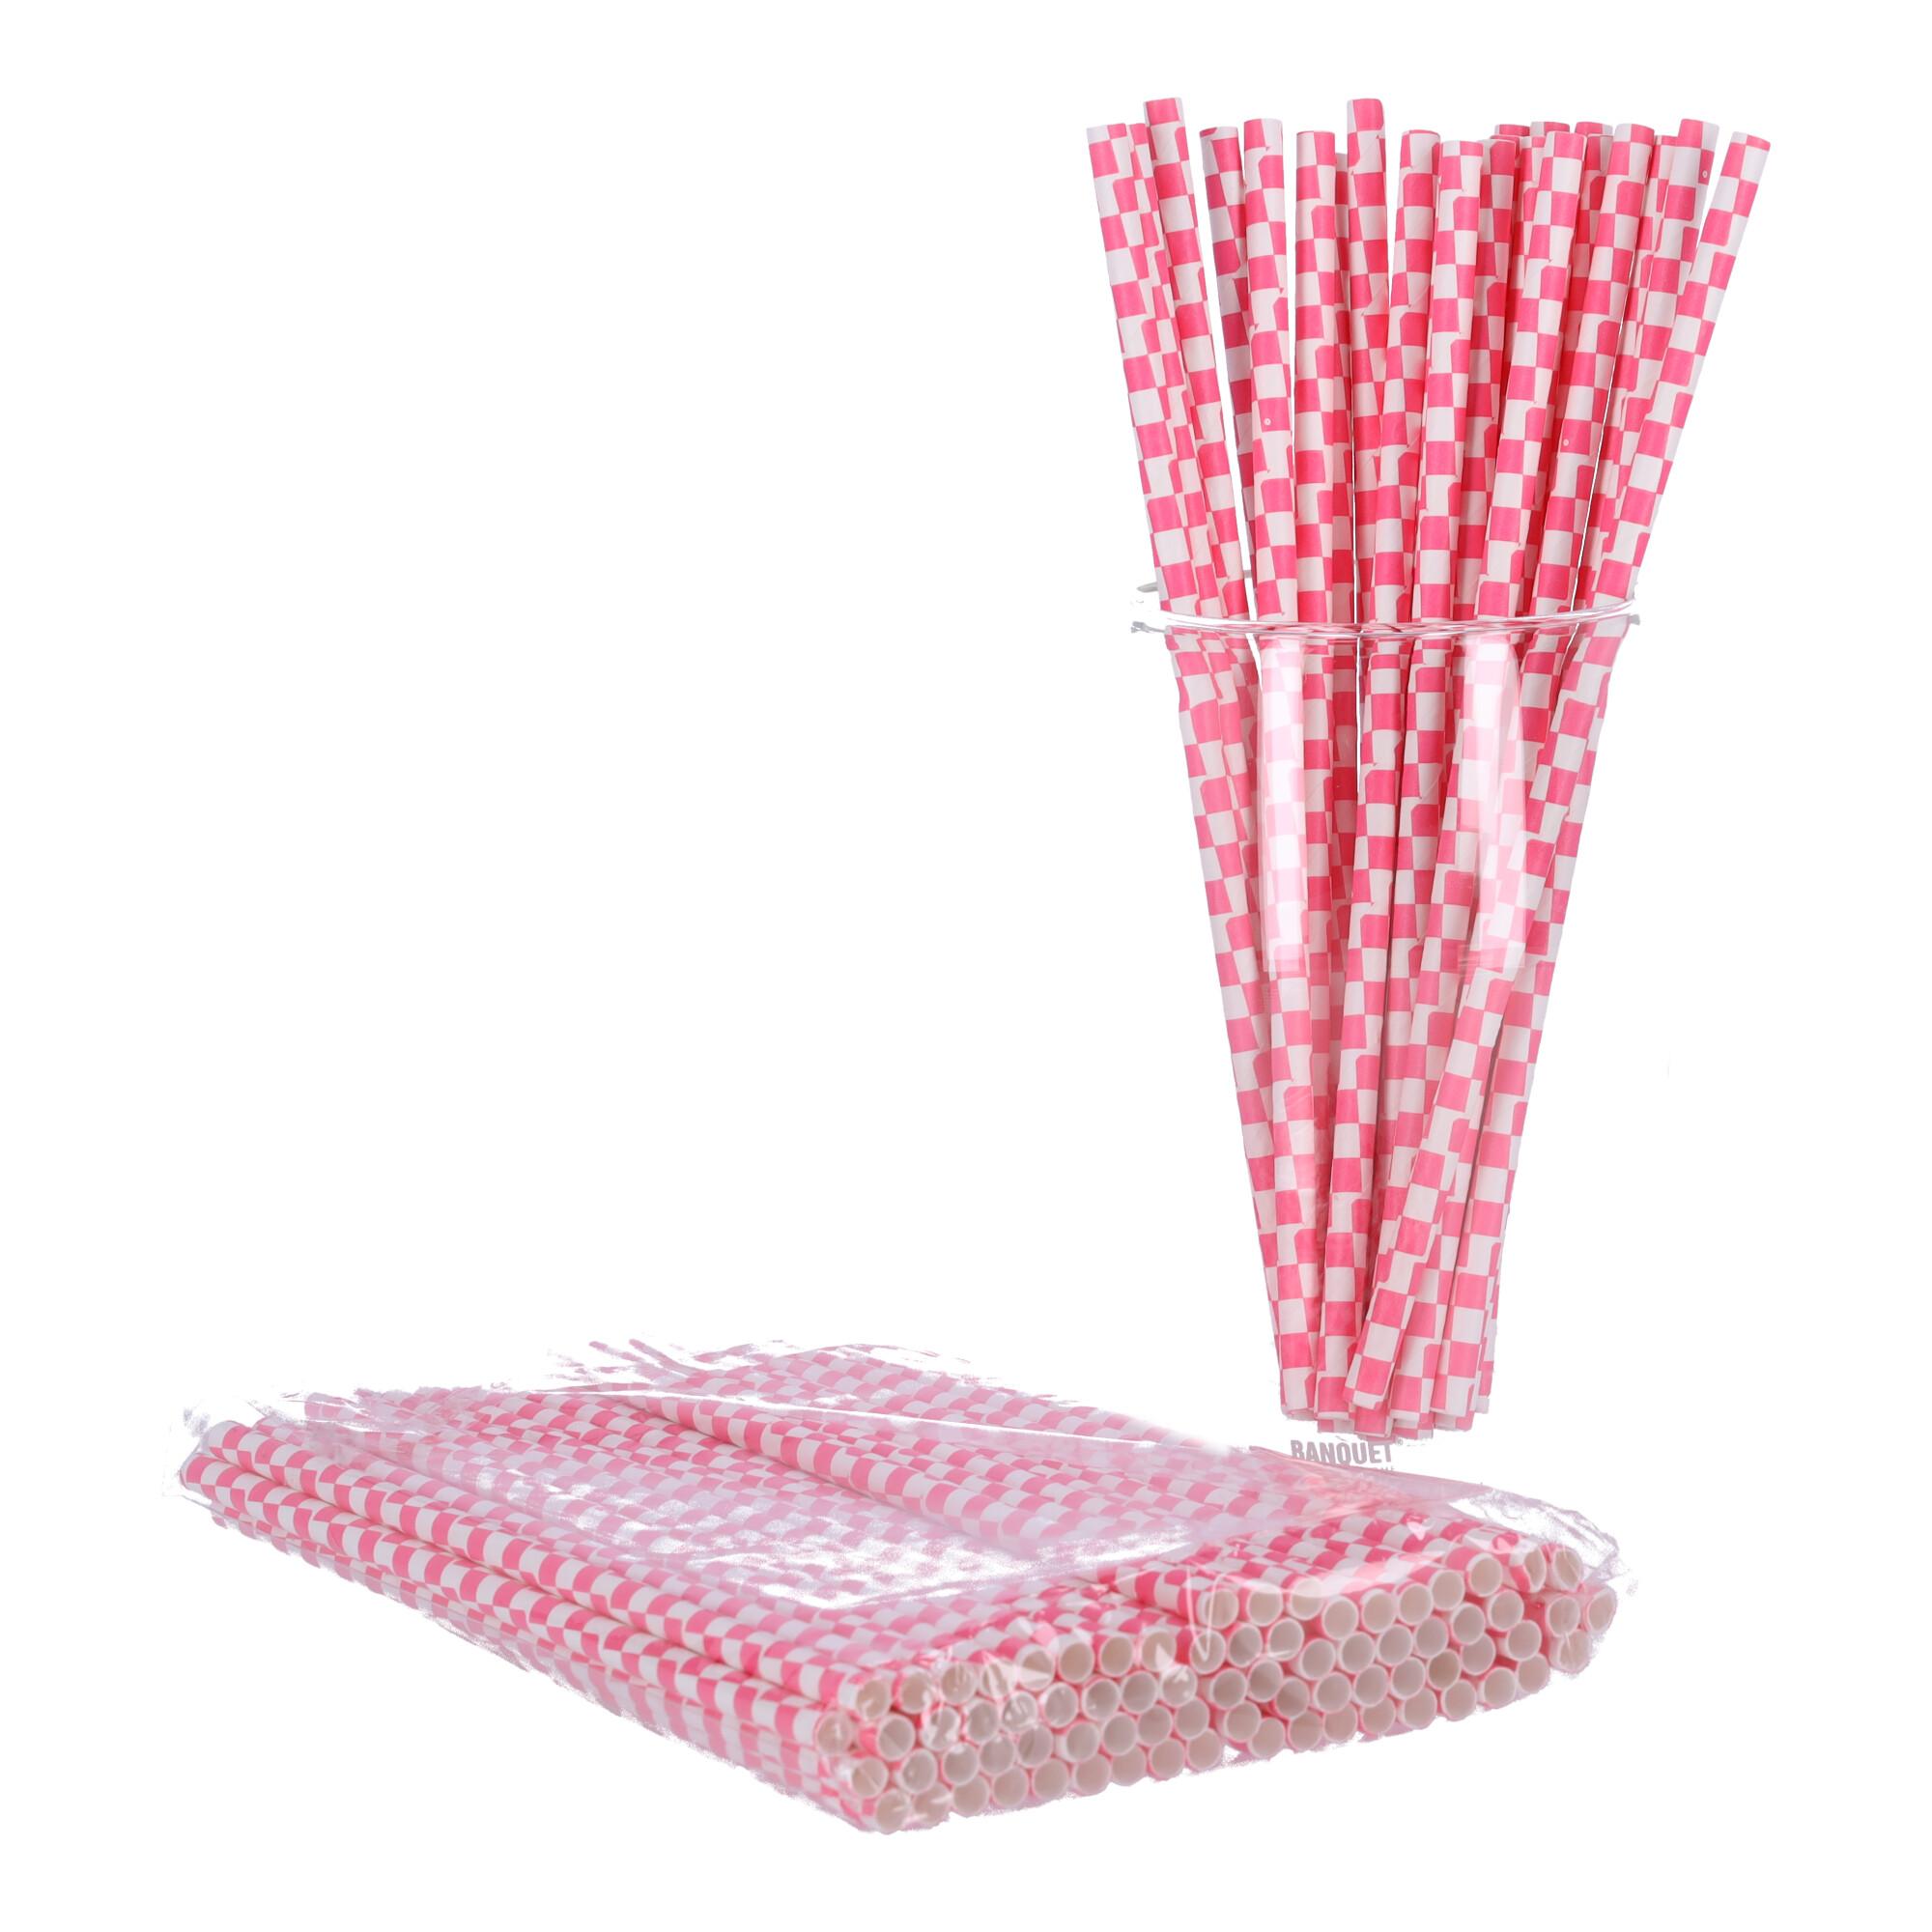 Paper straws 197mm x 6mm, 100 pcs - pink